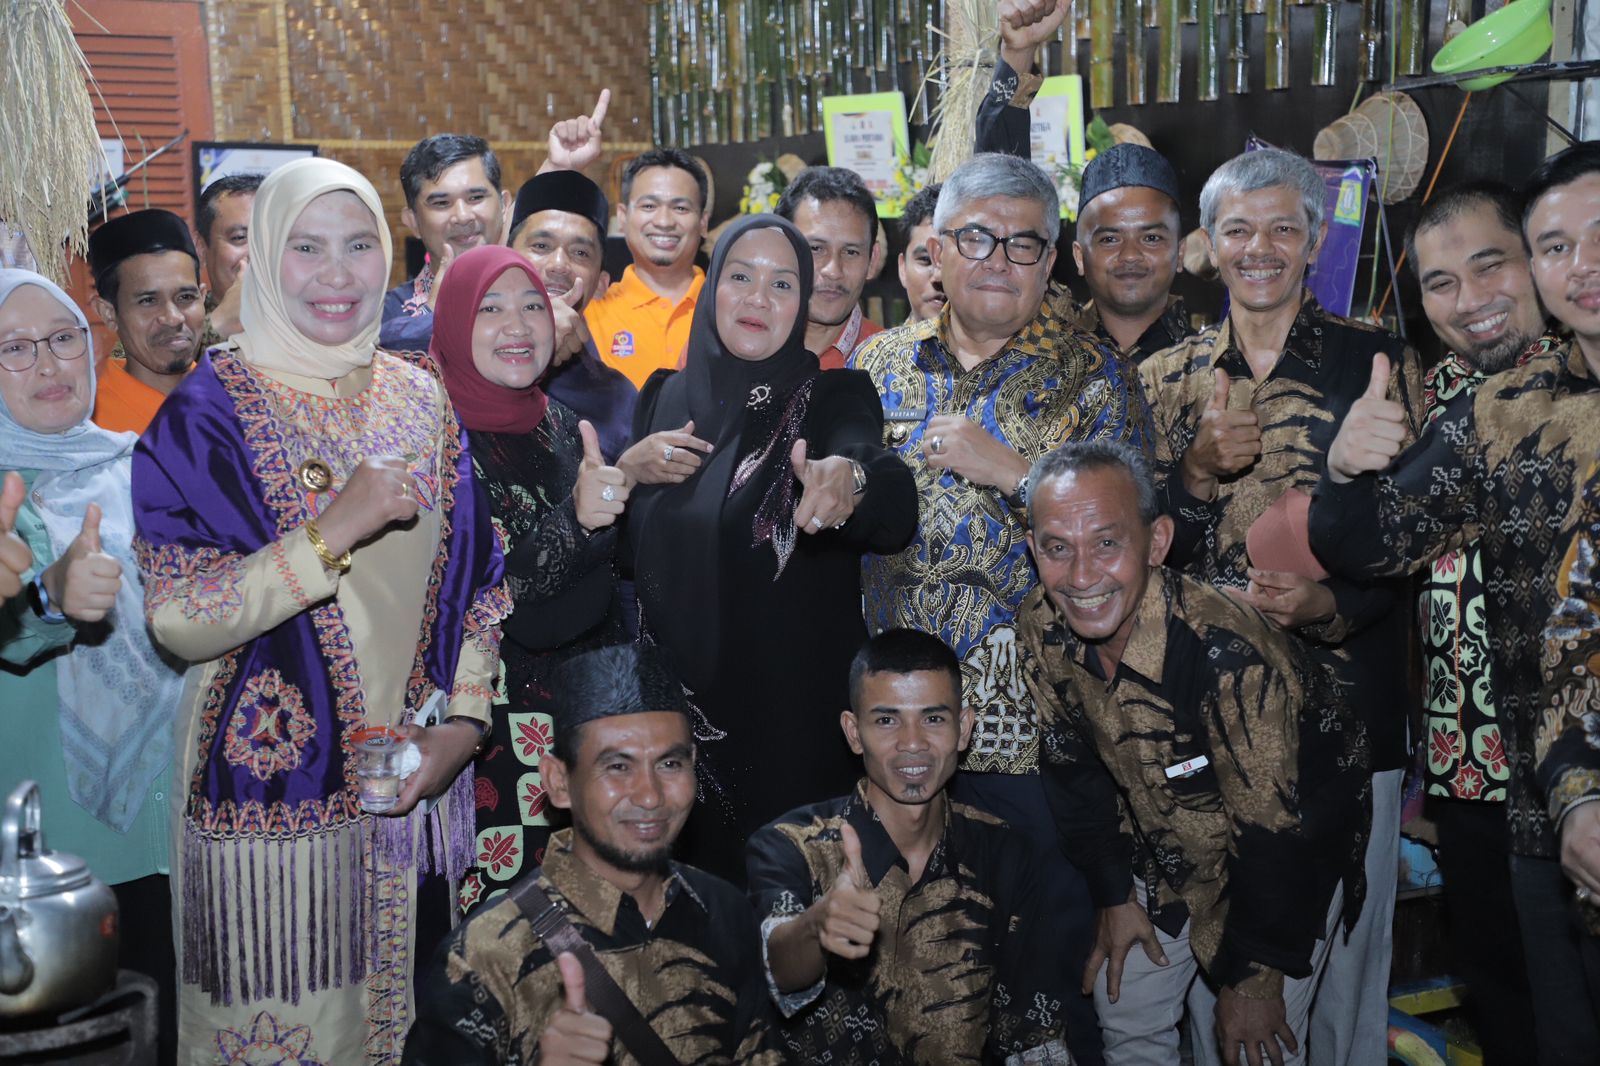 Pj Bupati Aceh Besar Hadiri Gala Dinner di Meuligo Bupati Nagan Raya